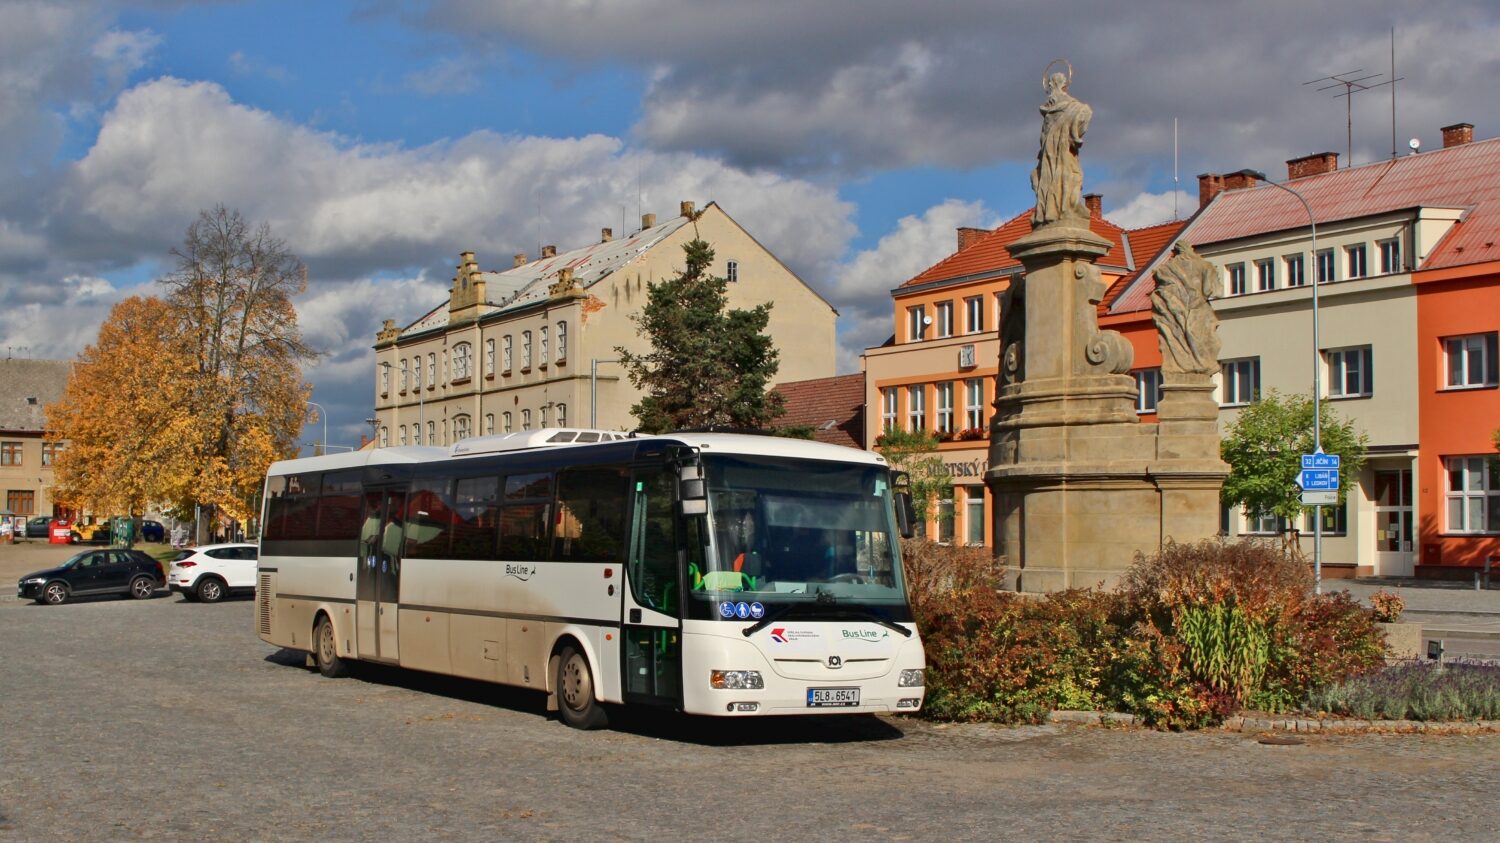 Autobus SOR CN 12,3 společnosti BusLine zachycený na náměstí v Kopidlně společně s barokním sousoším Panny Marie, sv. Jana Nepomuckého a sv. Josefa z roku 1720. (foto: ROPID)